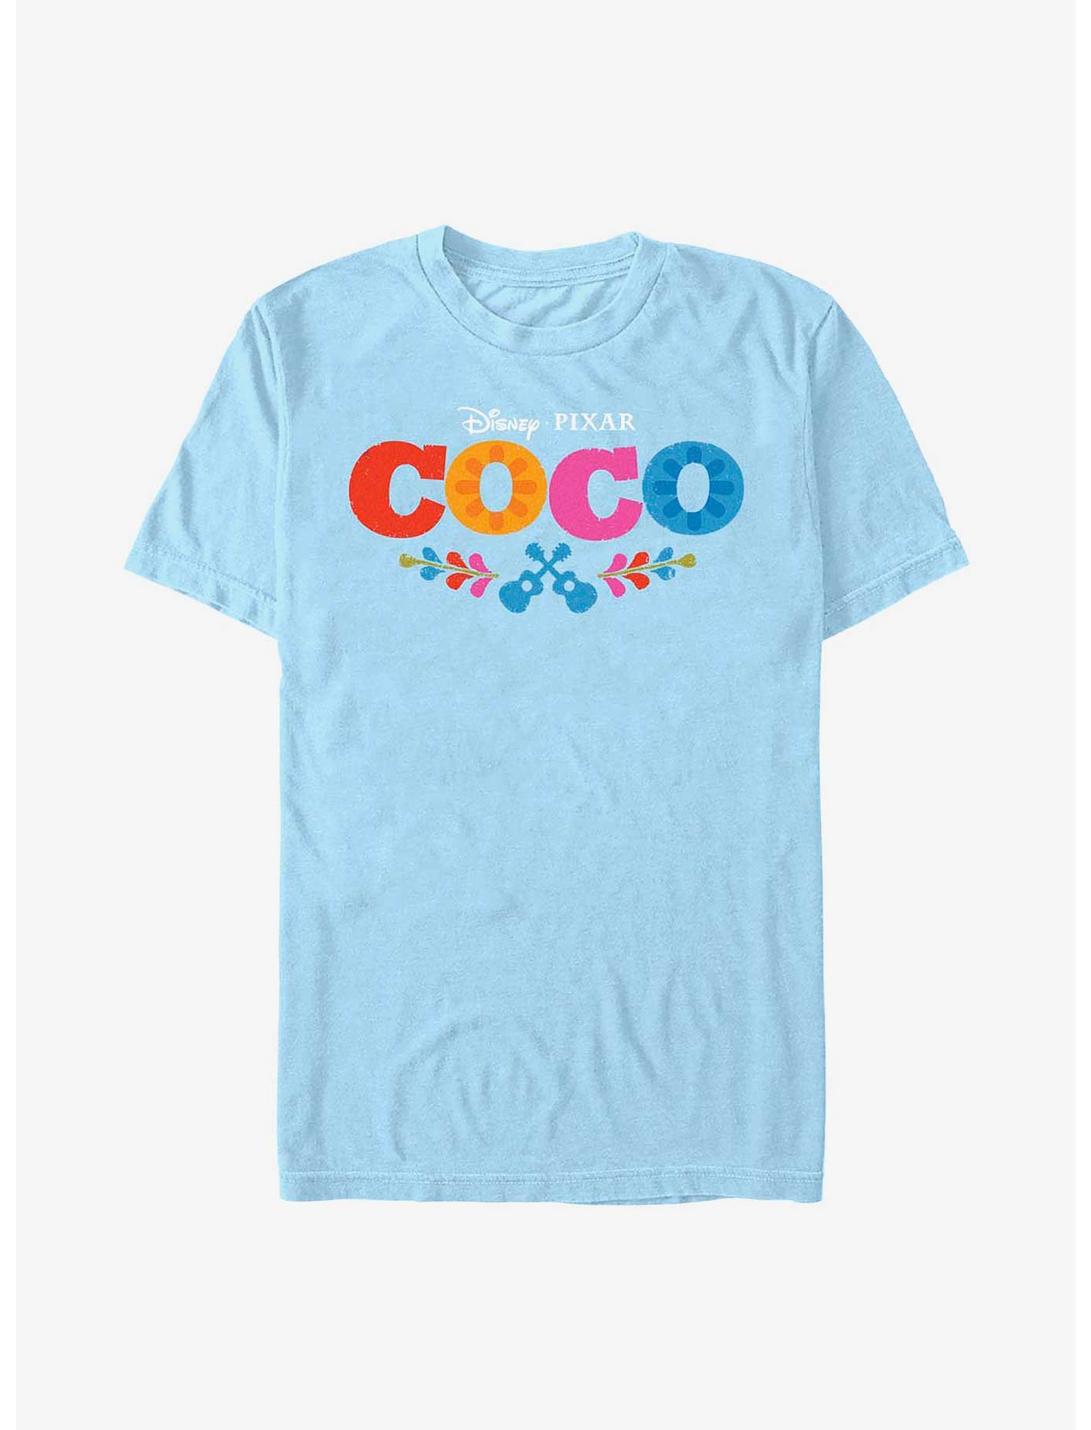 Disney Pixar Coco Logo T-Shirt, LT BLUE, hi-res